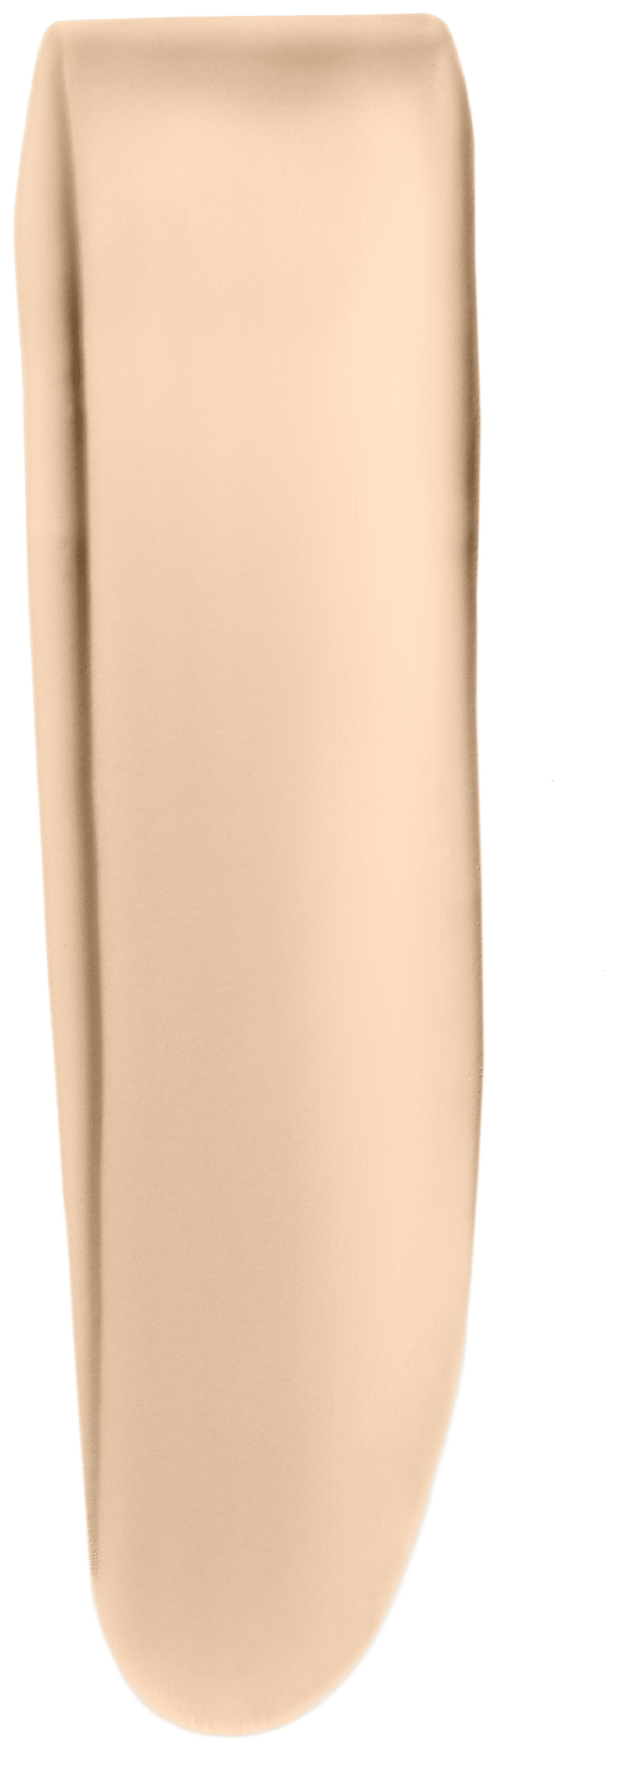 L'Oreal Тональный крем "Alliance Perfect, Совершенное слияние", выравнивающий и увлажняющий, оттенок N1.5, 30 мл - фотография № 2